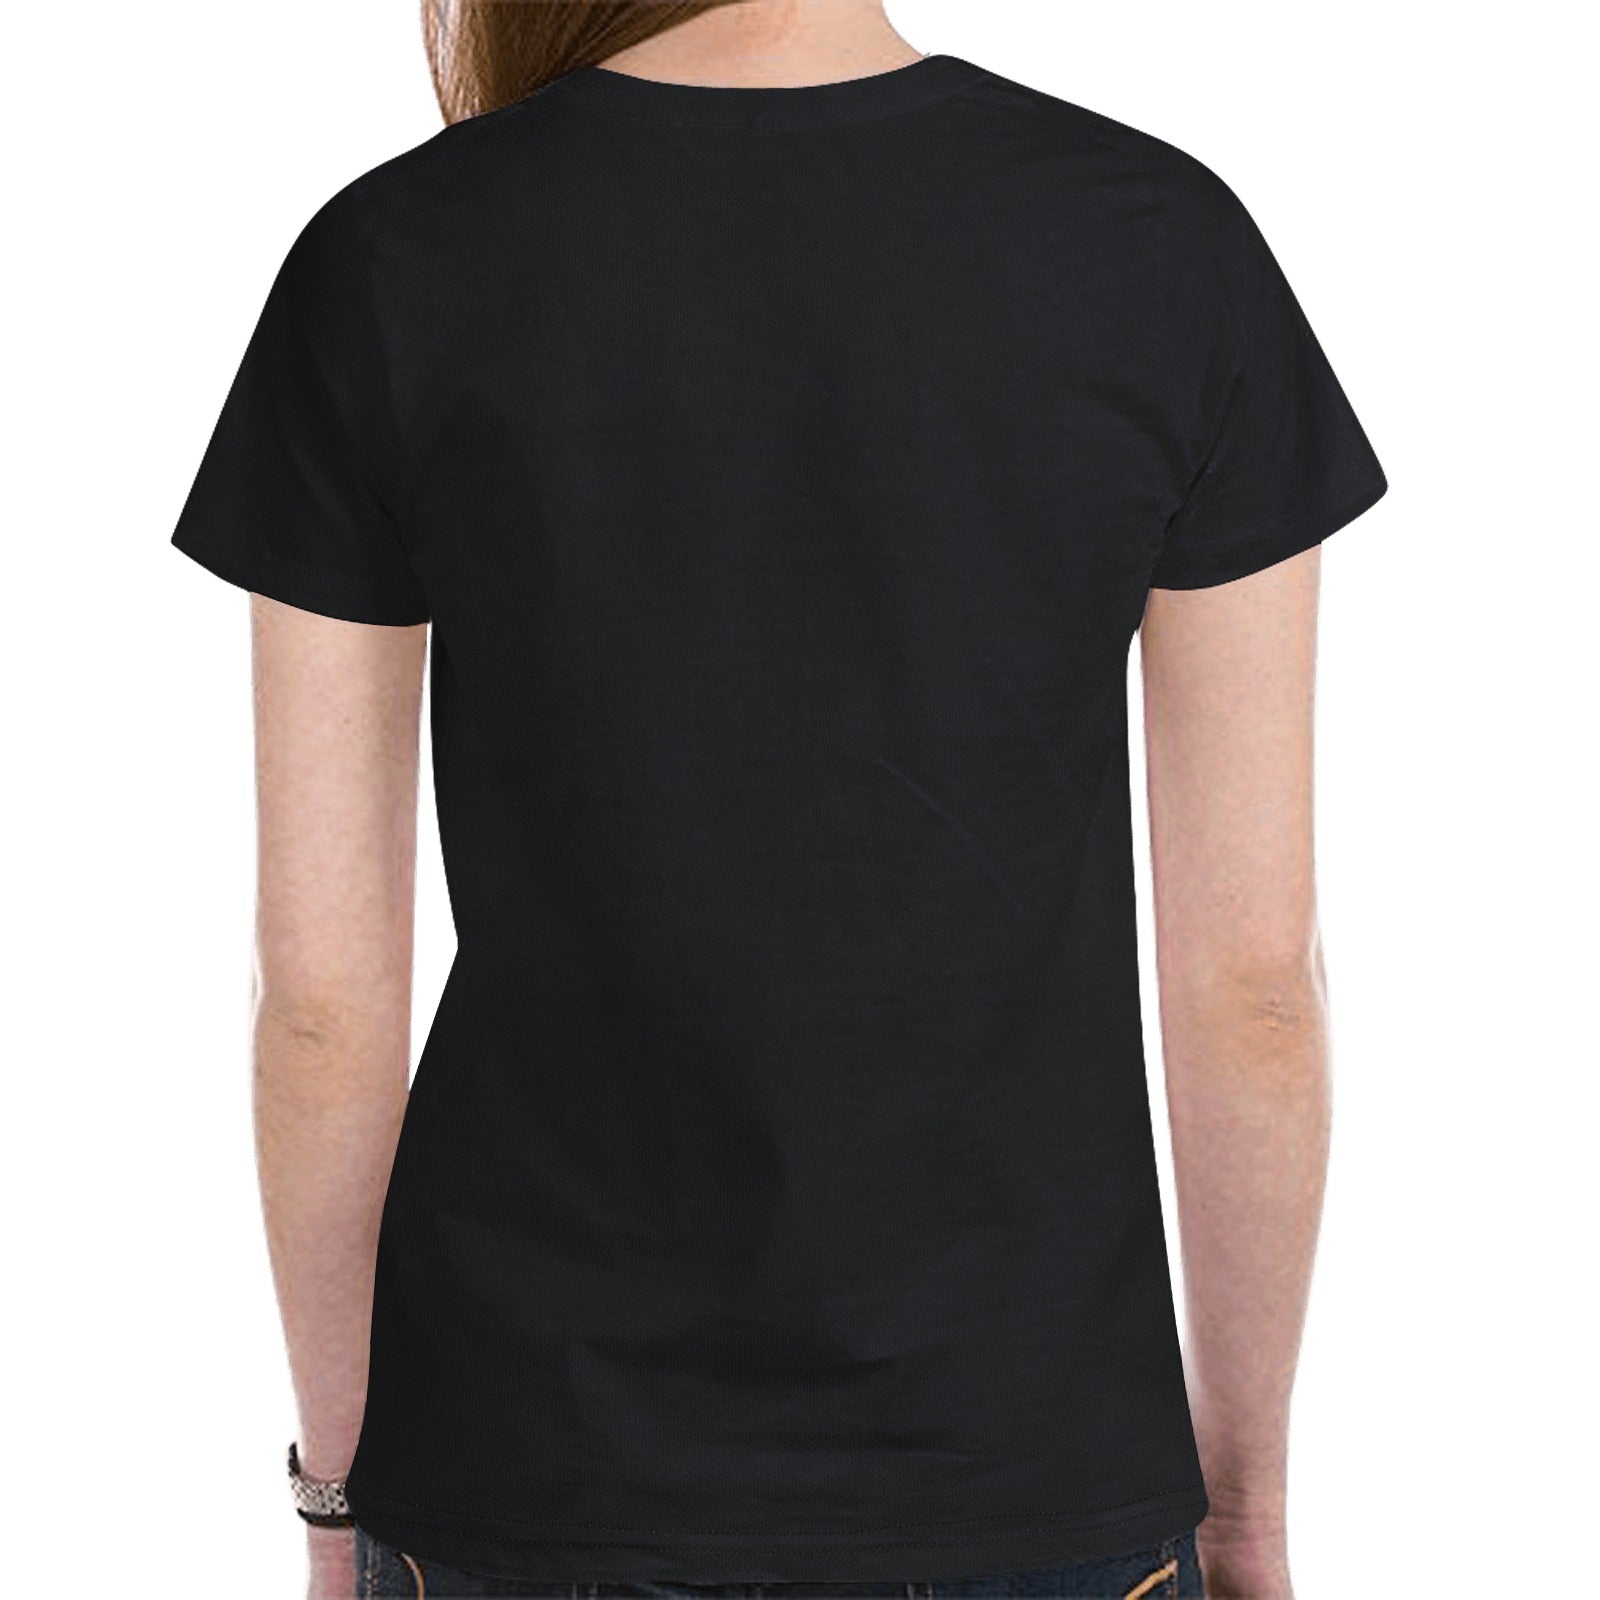 Floral Beaver Spirit Guide (Black) T-shirt for Women